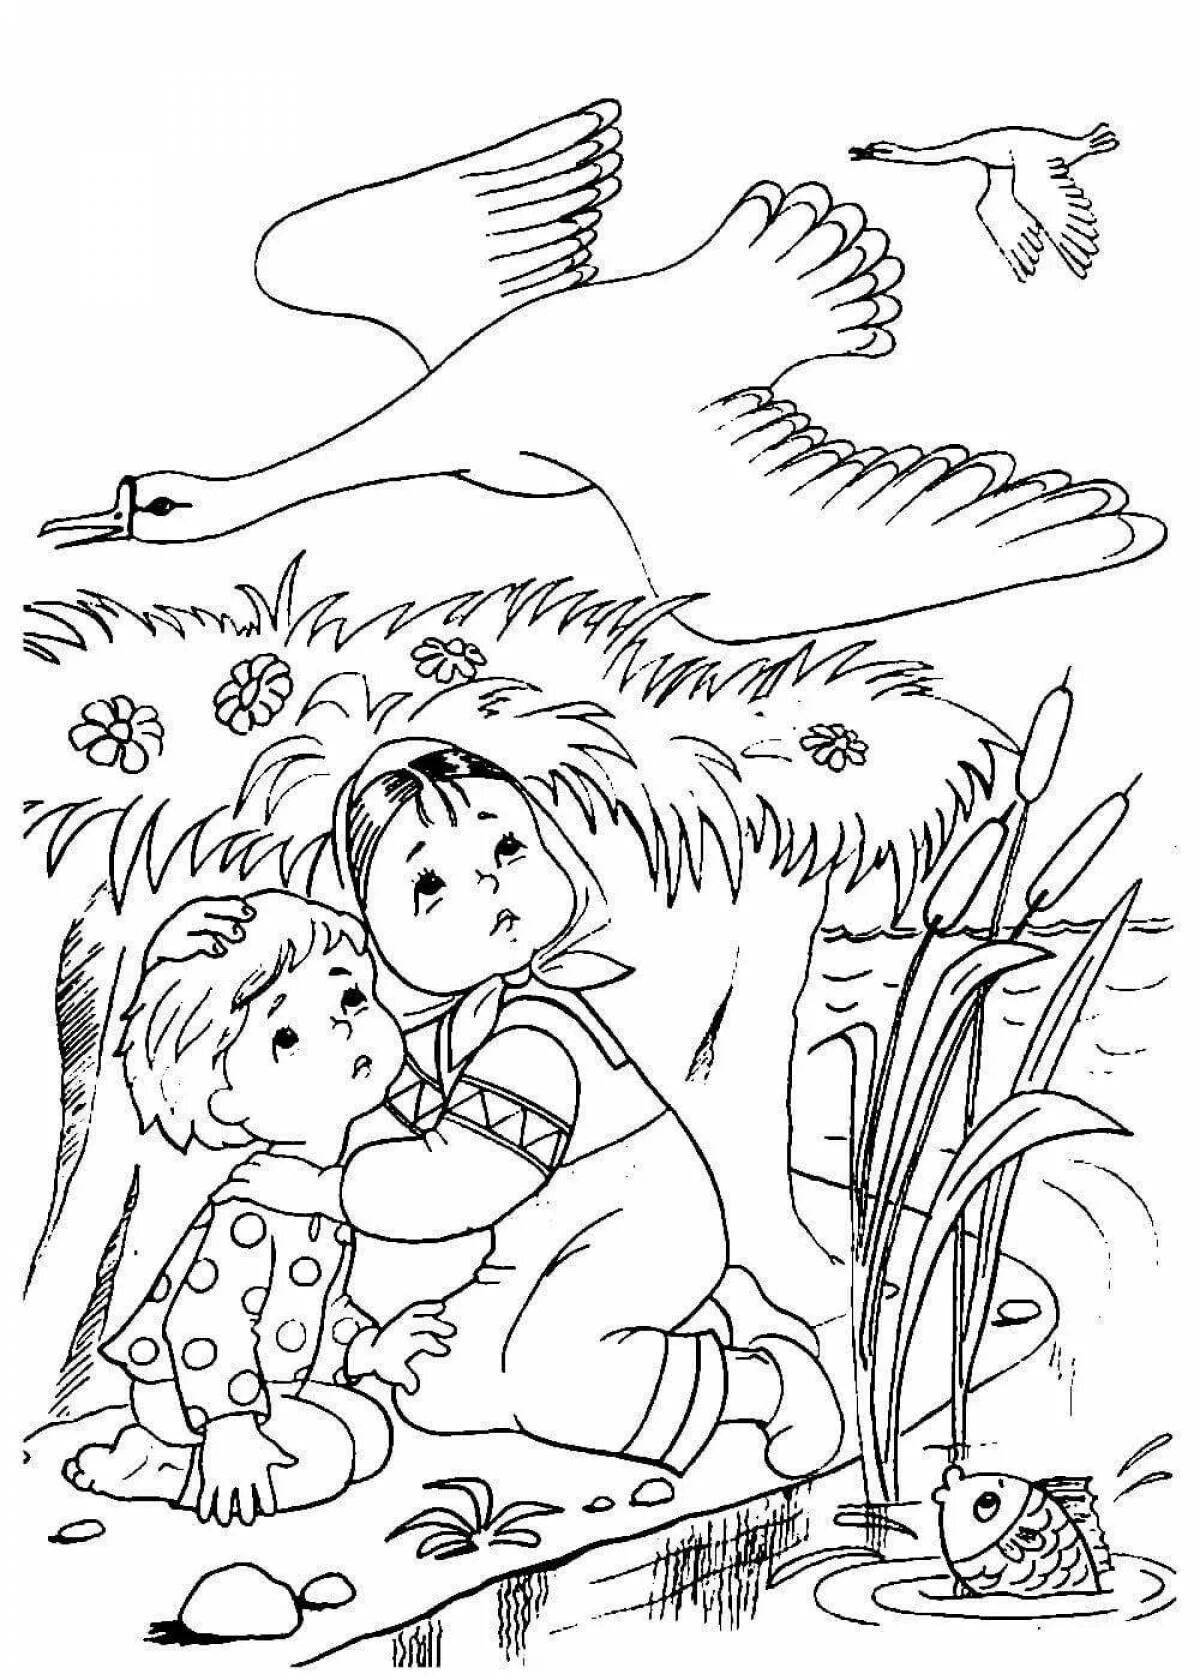 Картинки из сказок раскраски. Сказка-раскраска. Гуси-лебеди. Раскраски к сказке гуси лебеди для детей. Раскраска по сказке гуси лебеди для детей. Гуси лебеди Иванушка раскраска.